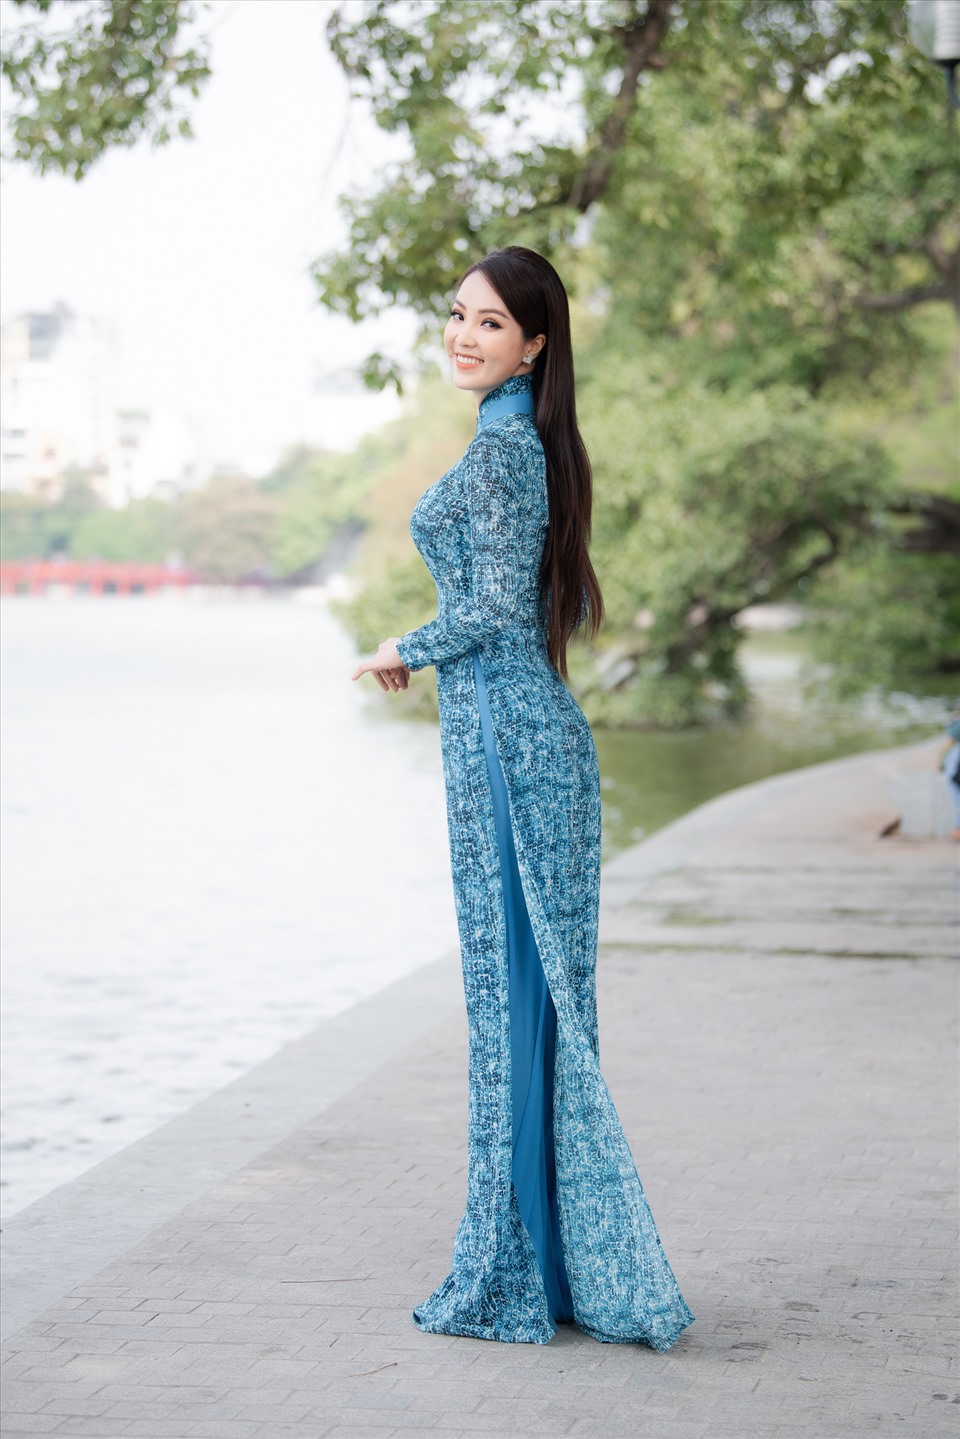 Trong bộ áo dài màu xanh của NTK Vũ Thu Trang, Á hậu Thuỵ Vân khoe được làn da trắng, vóc dáng không thua kém các mỹ nhân showbiz.